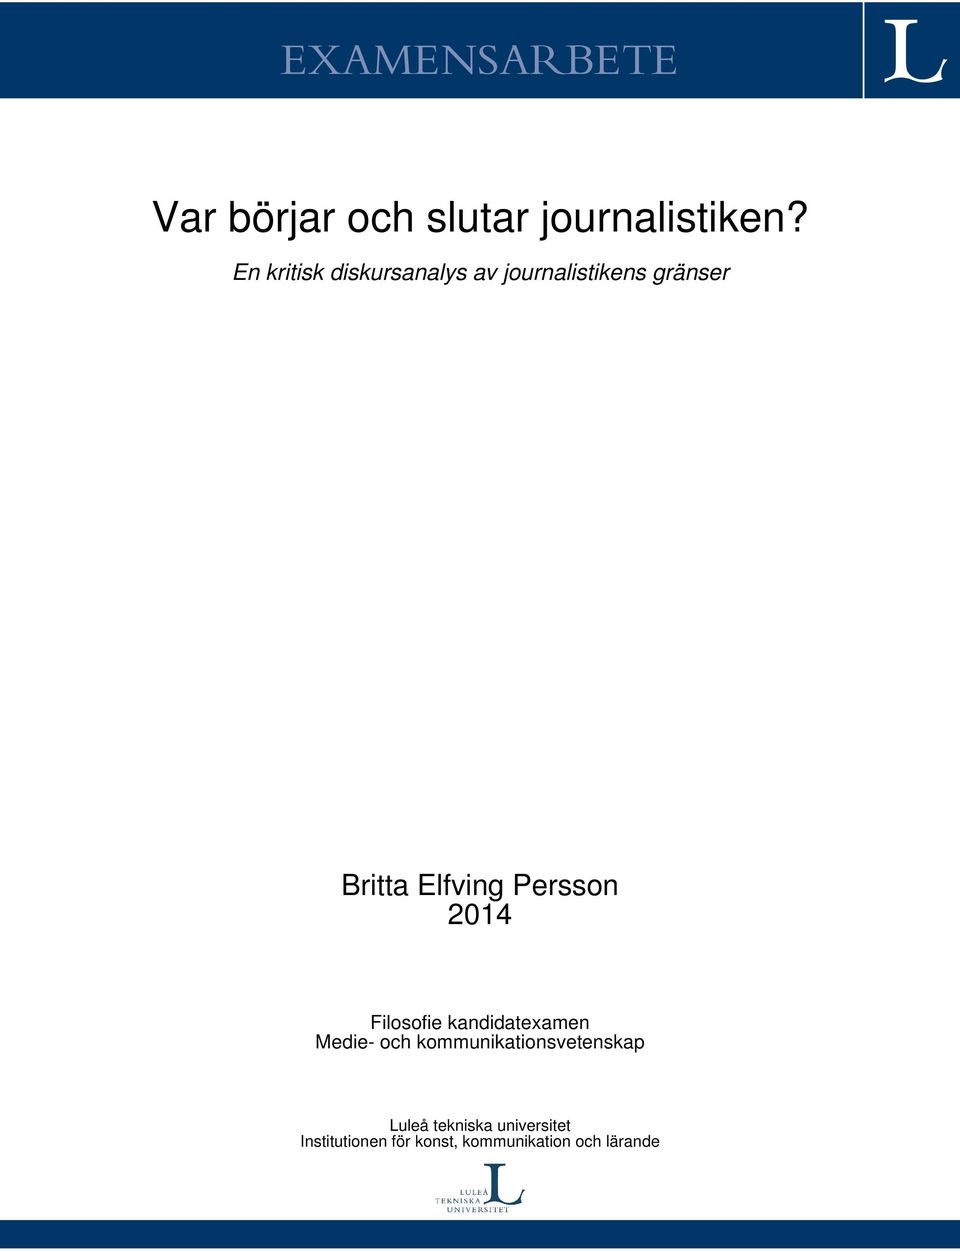 Persson 2014 Filosofie kandidatexamen Medie- och